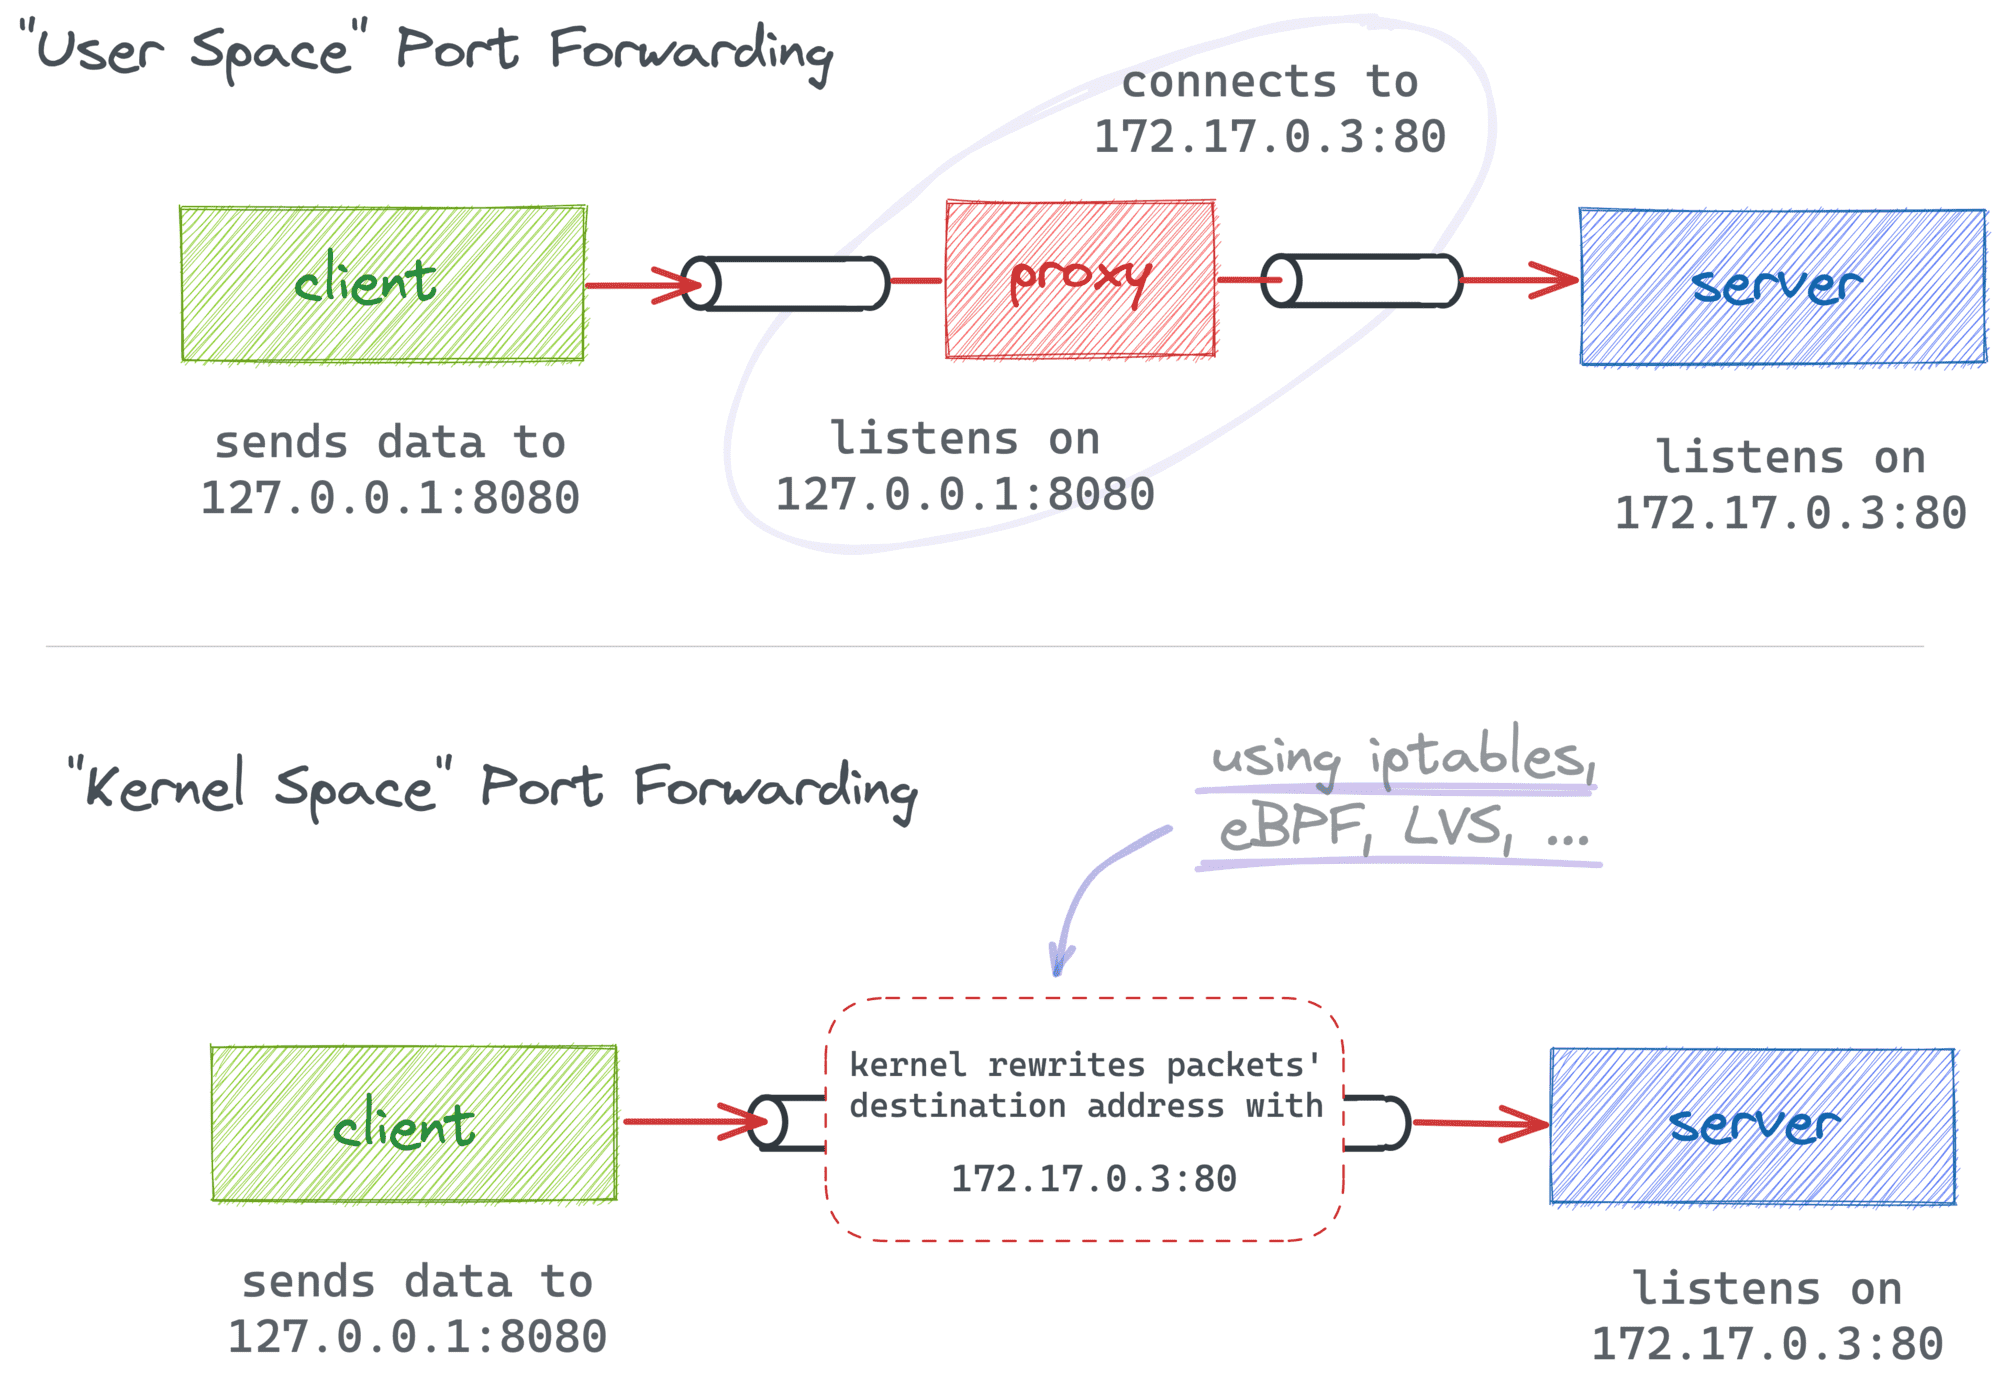 Port forwarding